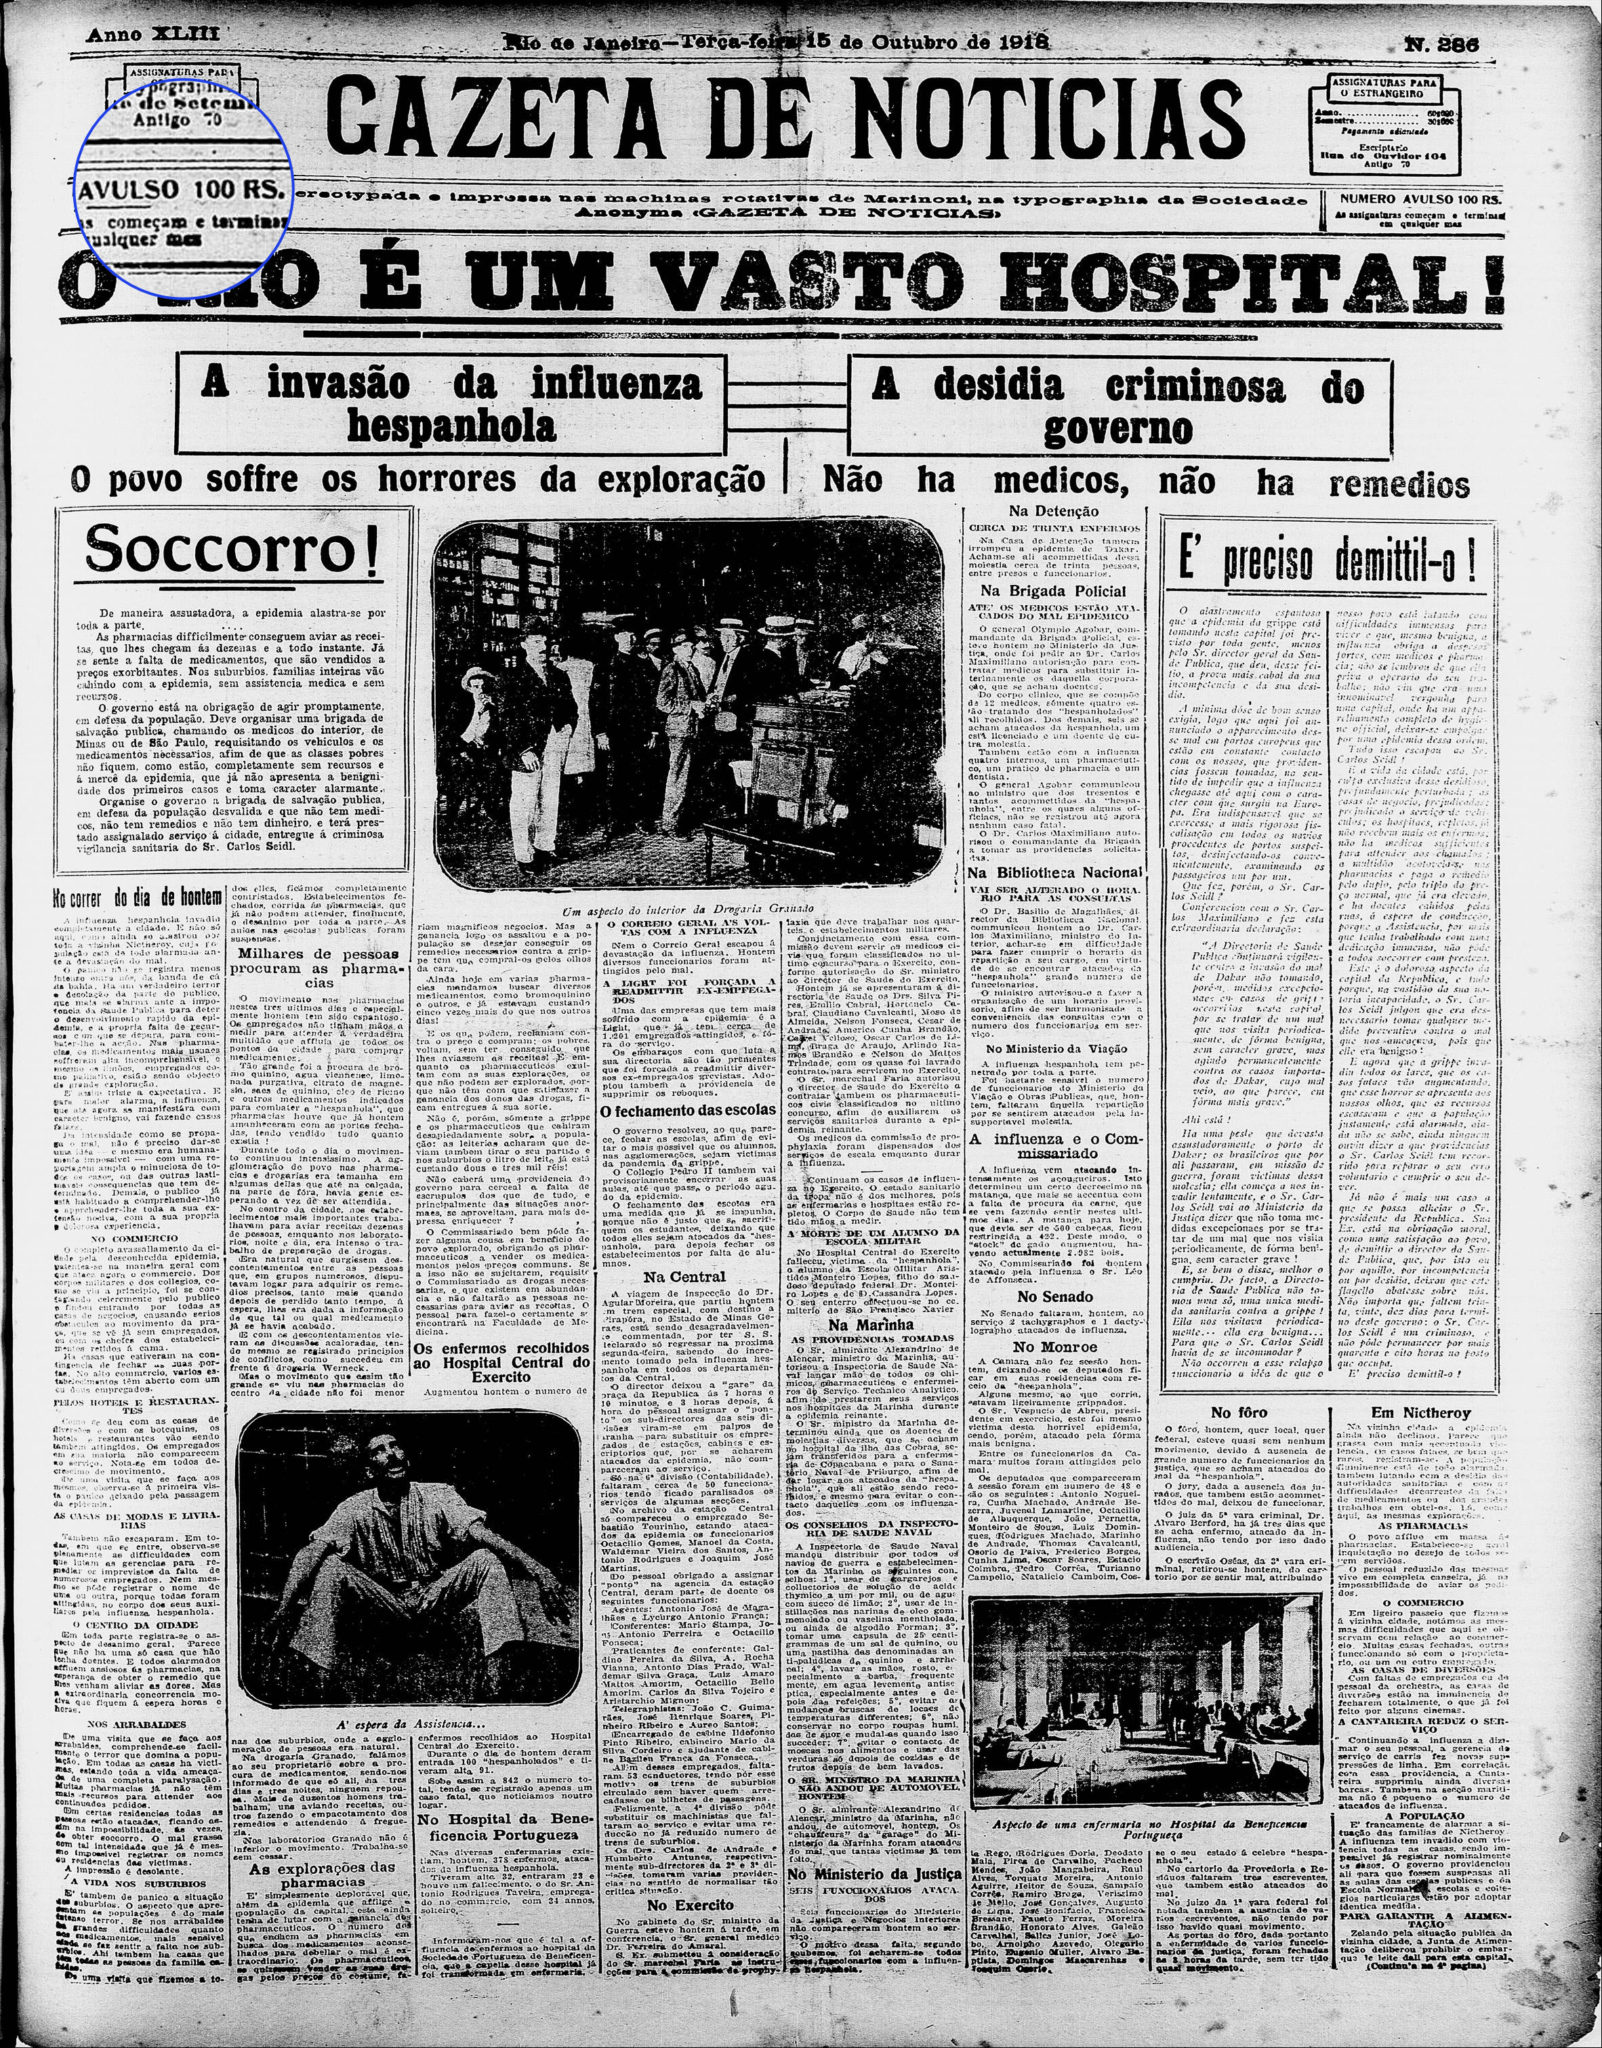 Capa do Jornal Gazeta de Notícias de 1918